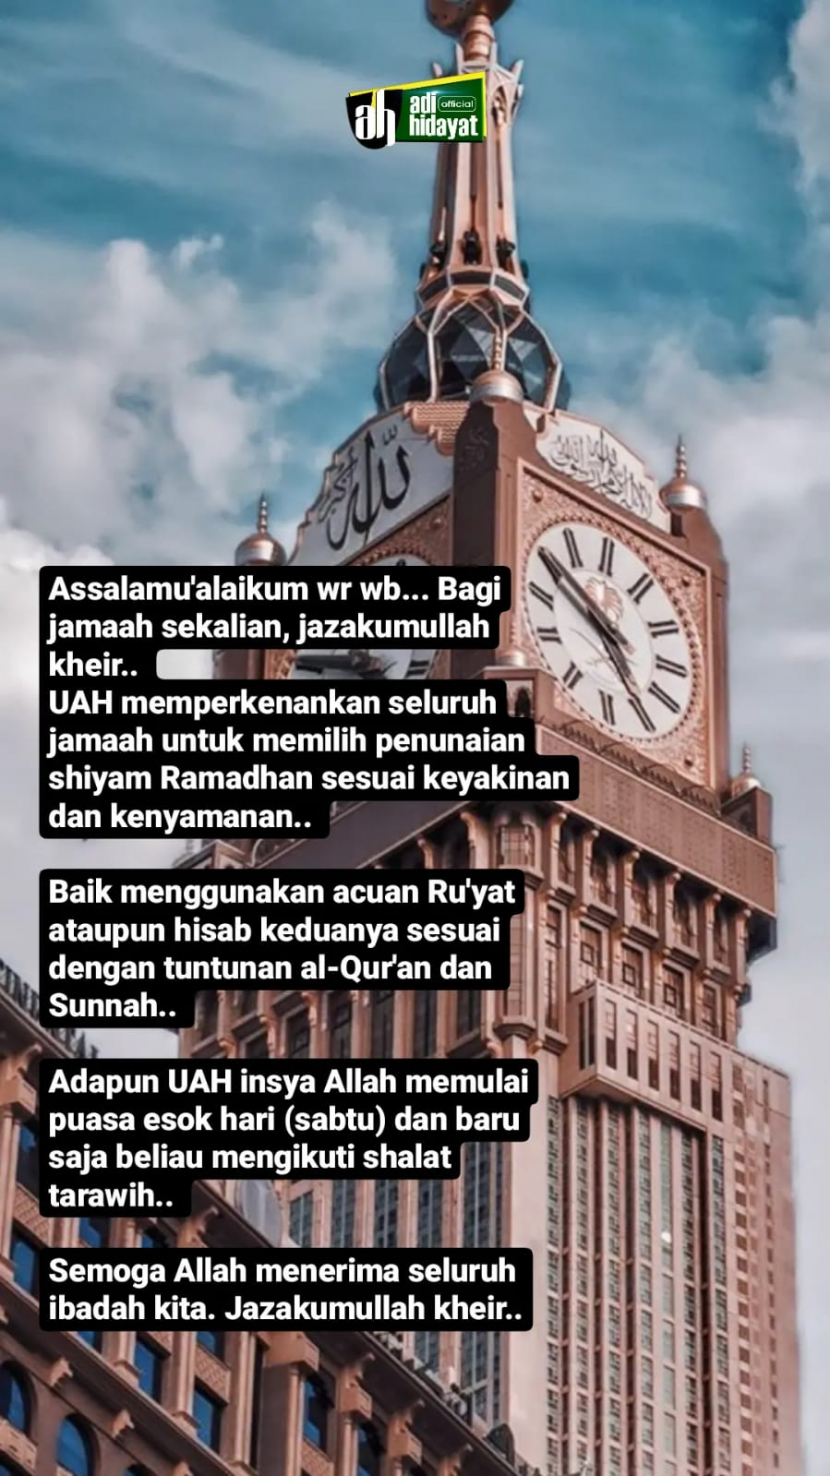 Ustadz Adi Hidayat akan memulai shaum 1 Ramadhan esok hari./Adi Hidayat Official